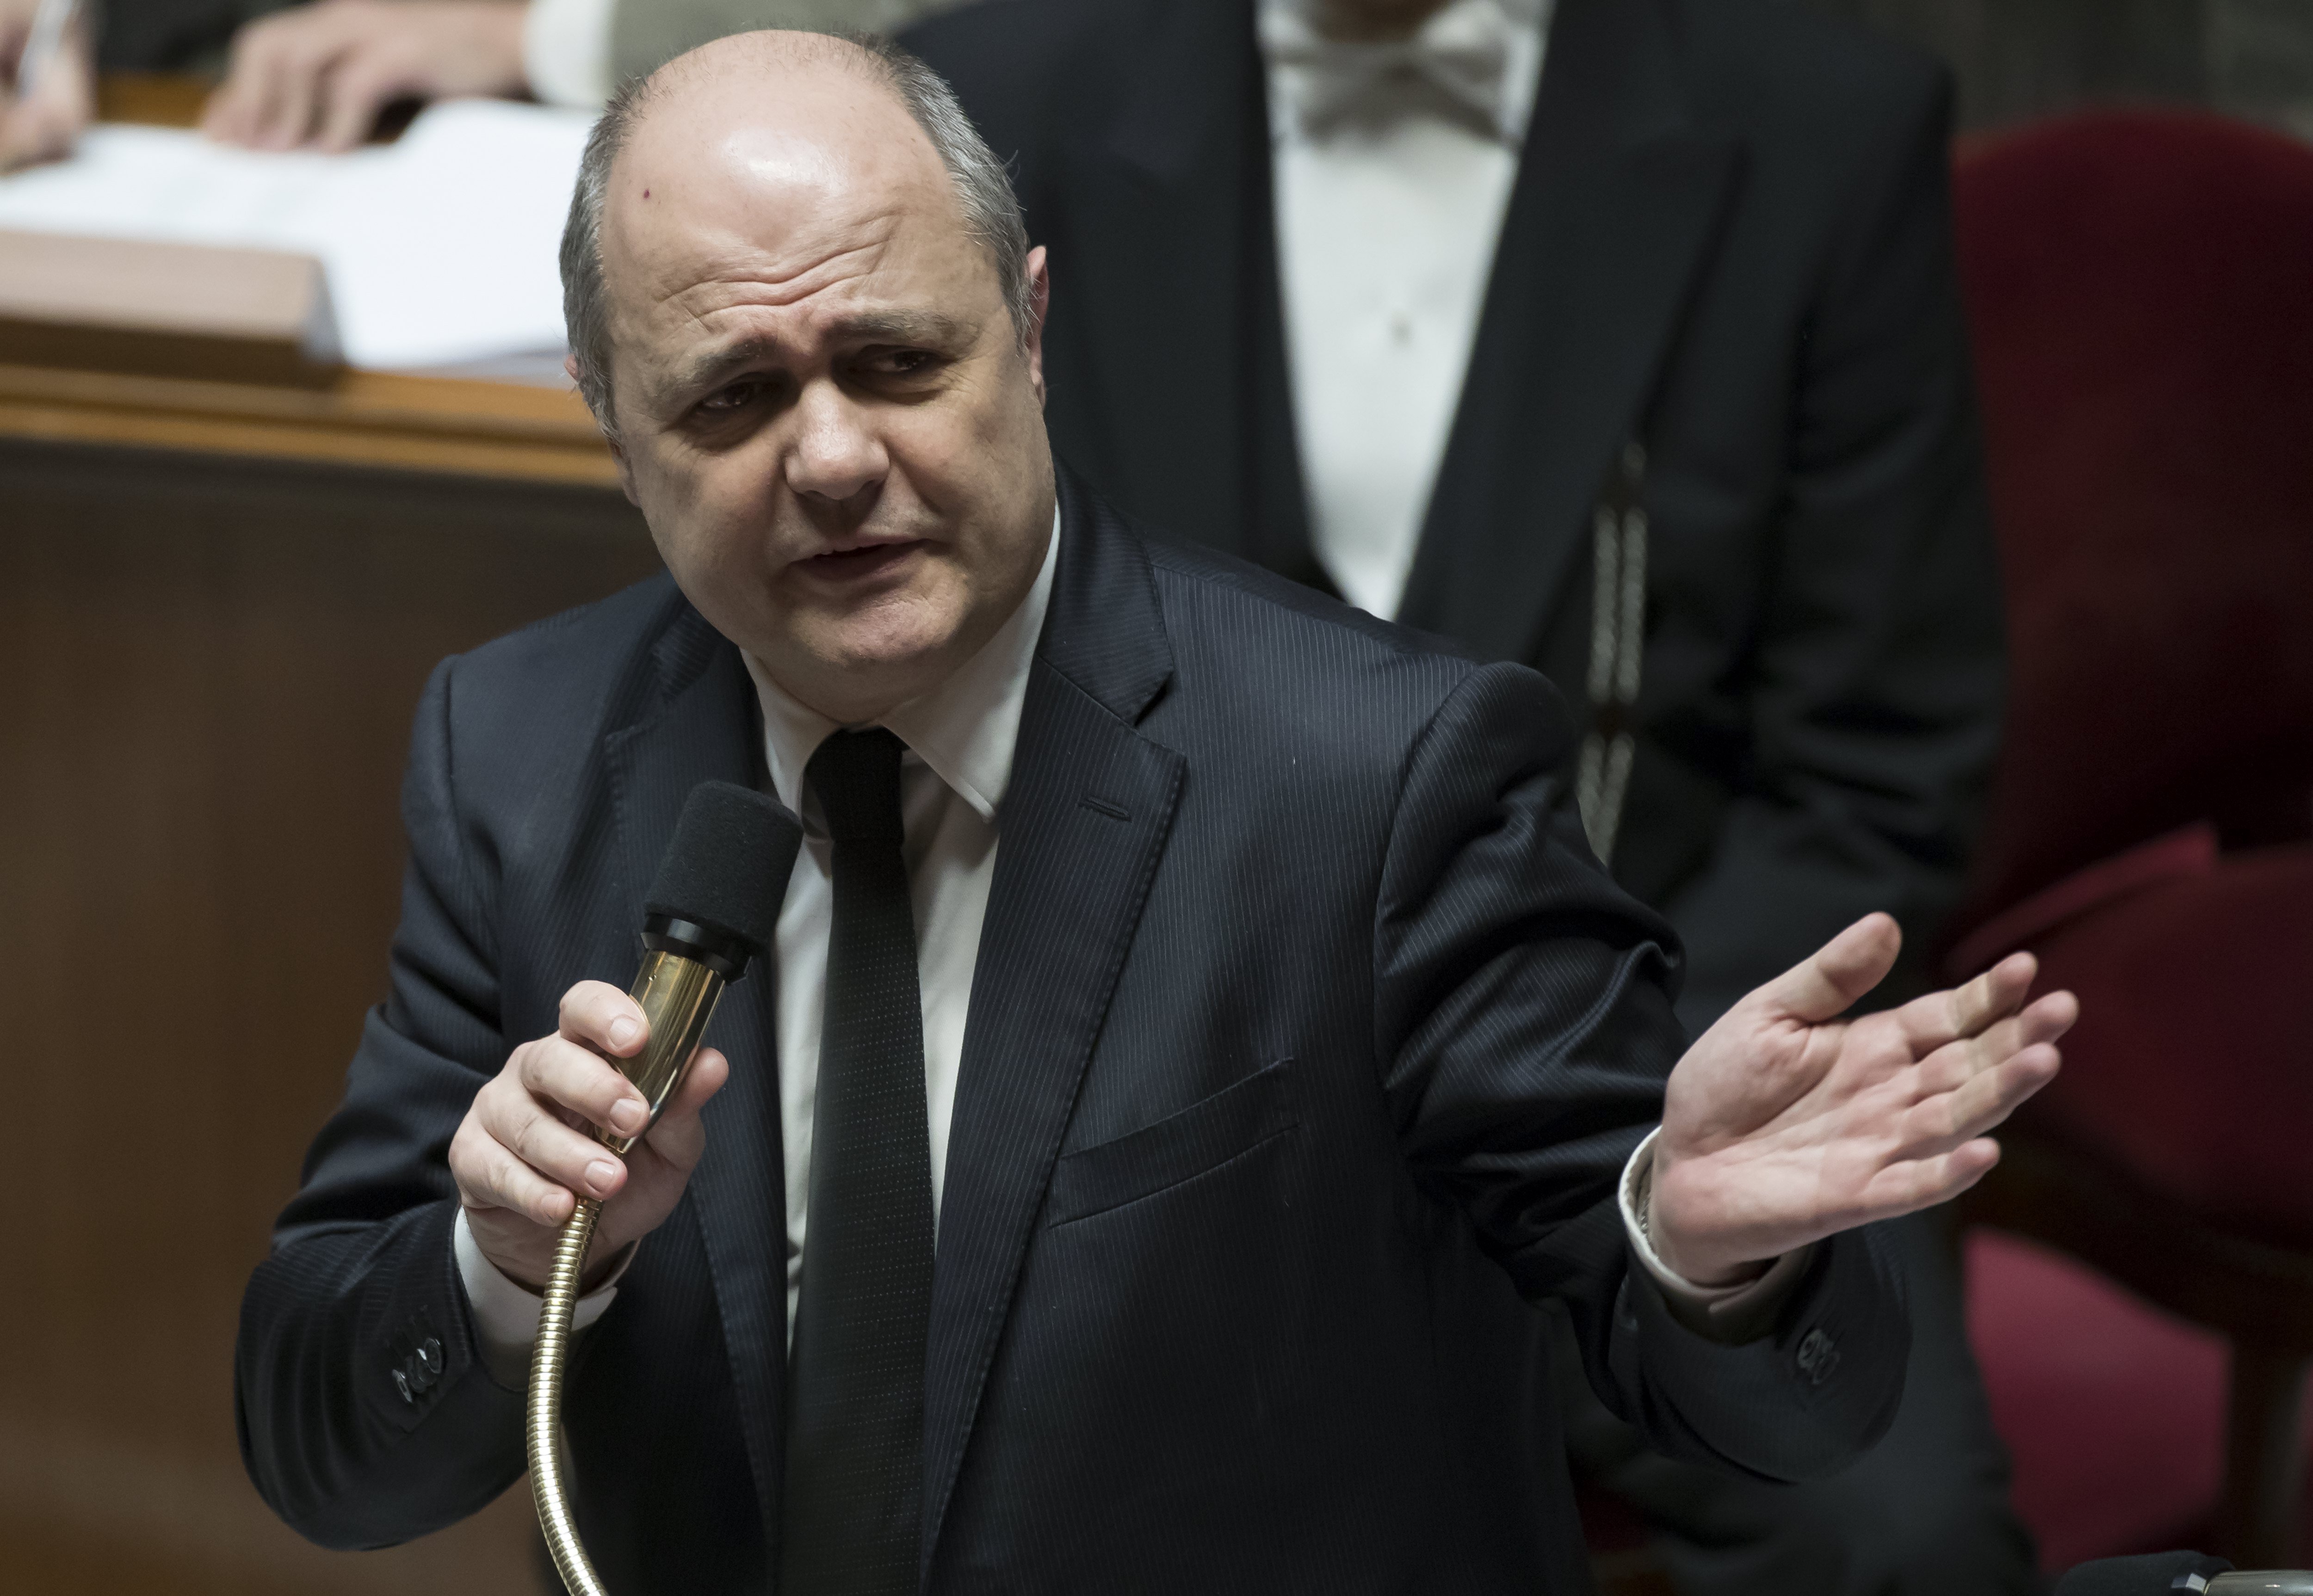 Dimite el ministro francés del Interior por haber contratado a sus hijas menores